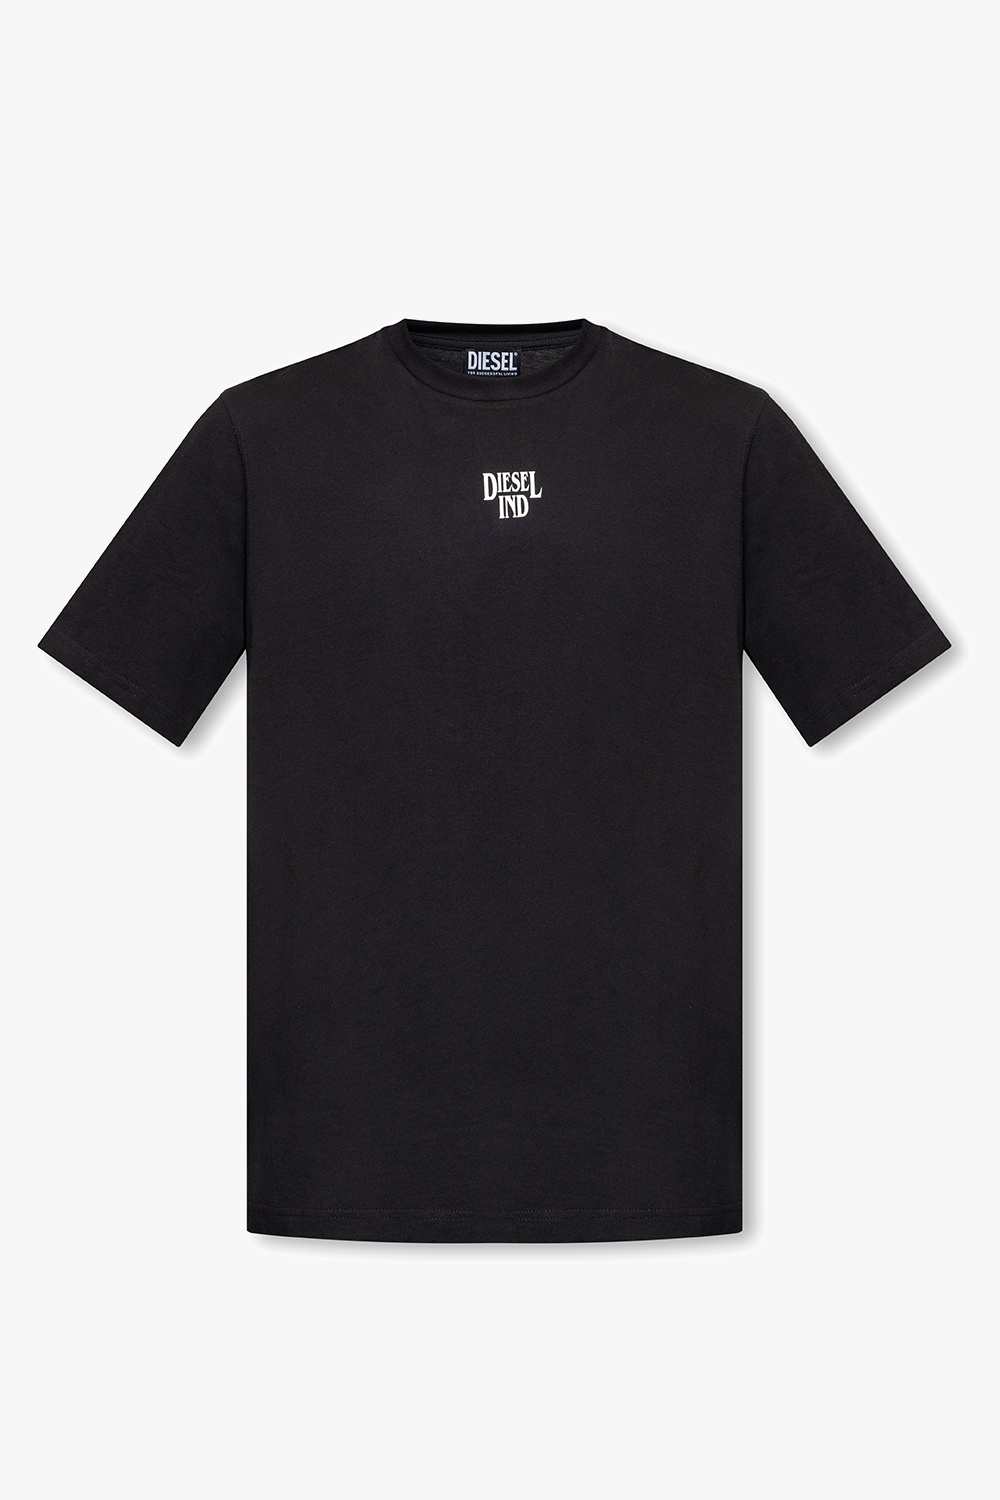 Diesel ‘T-JUST-G17’ T-shirt